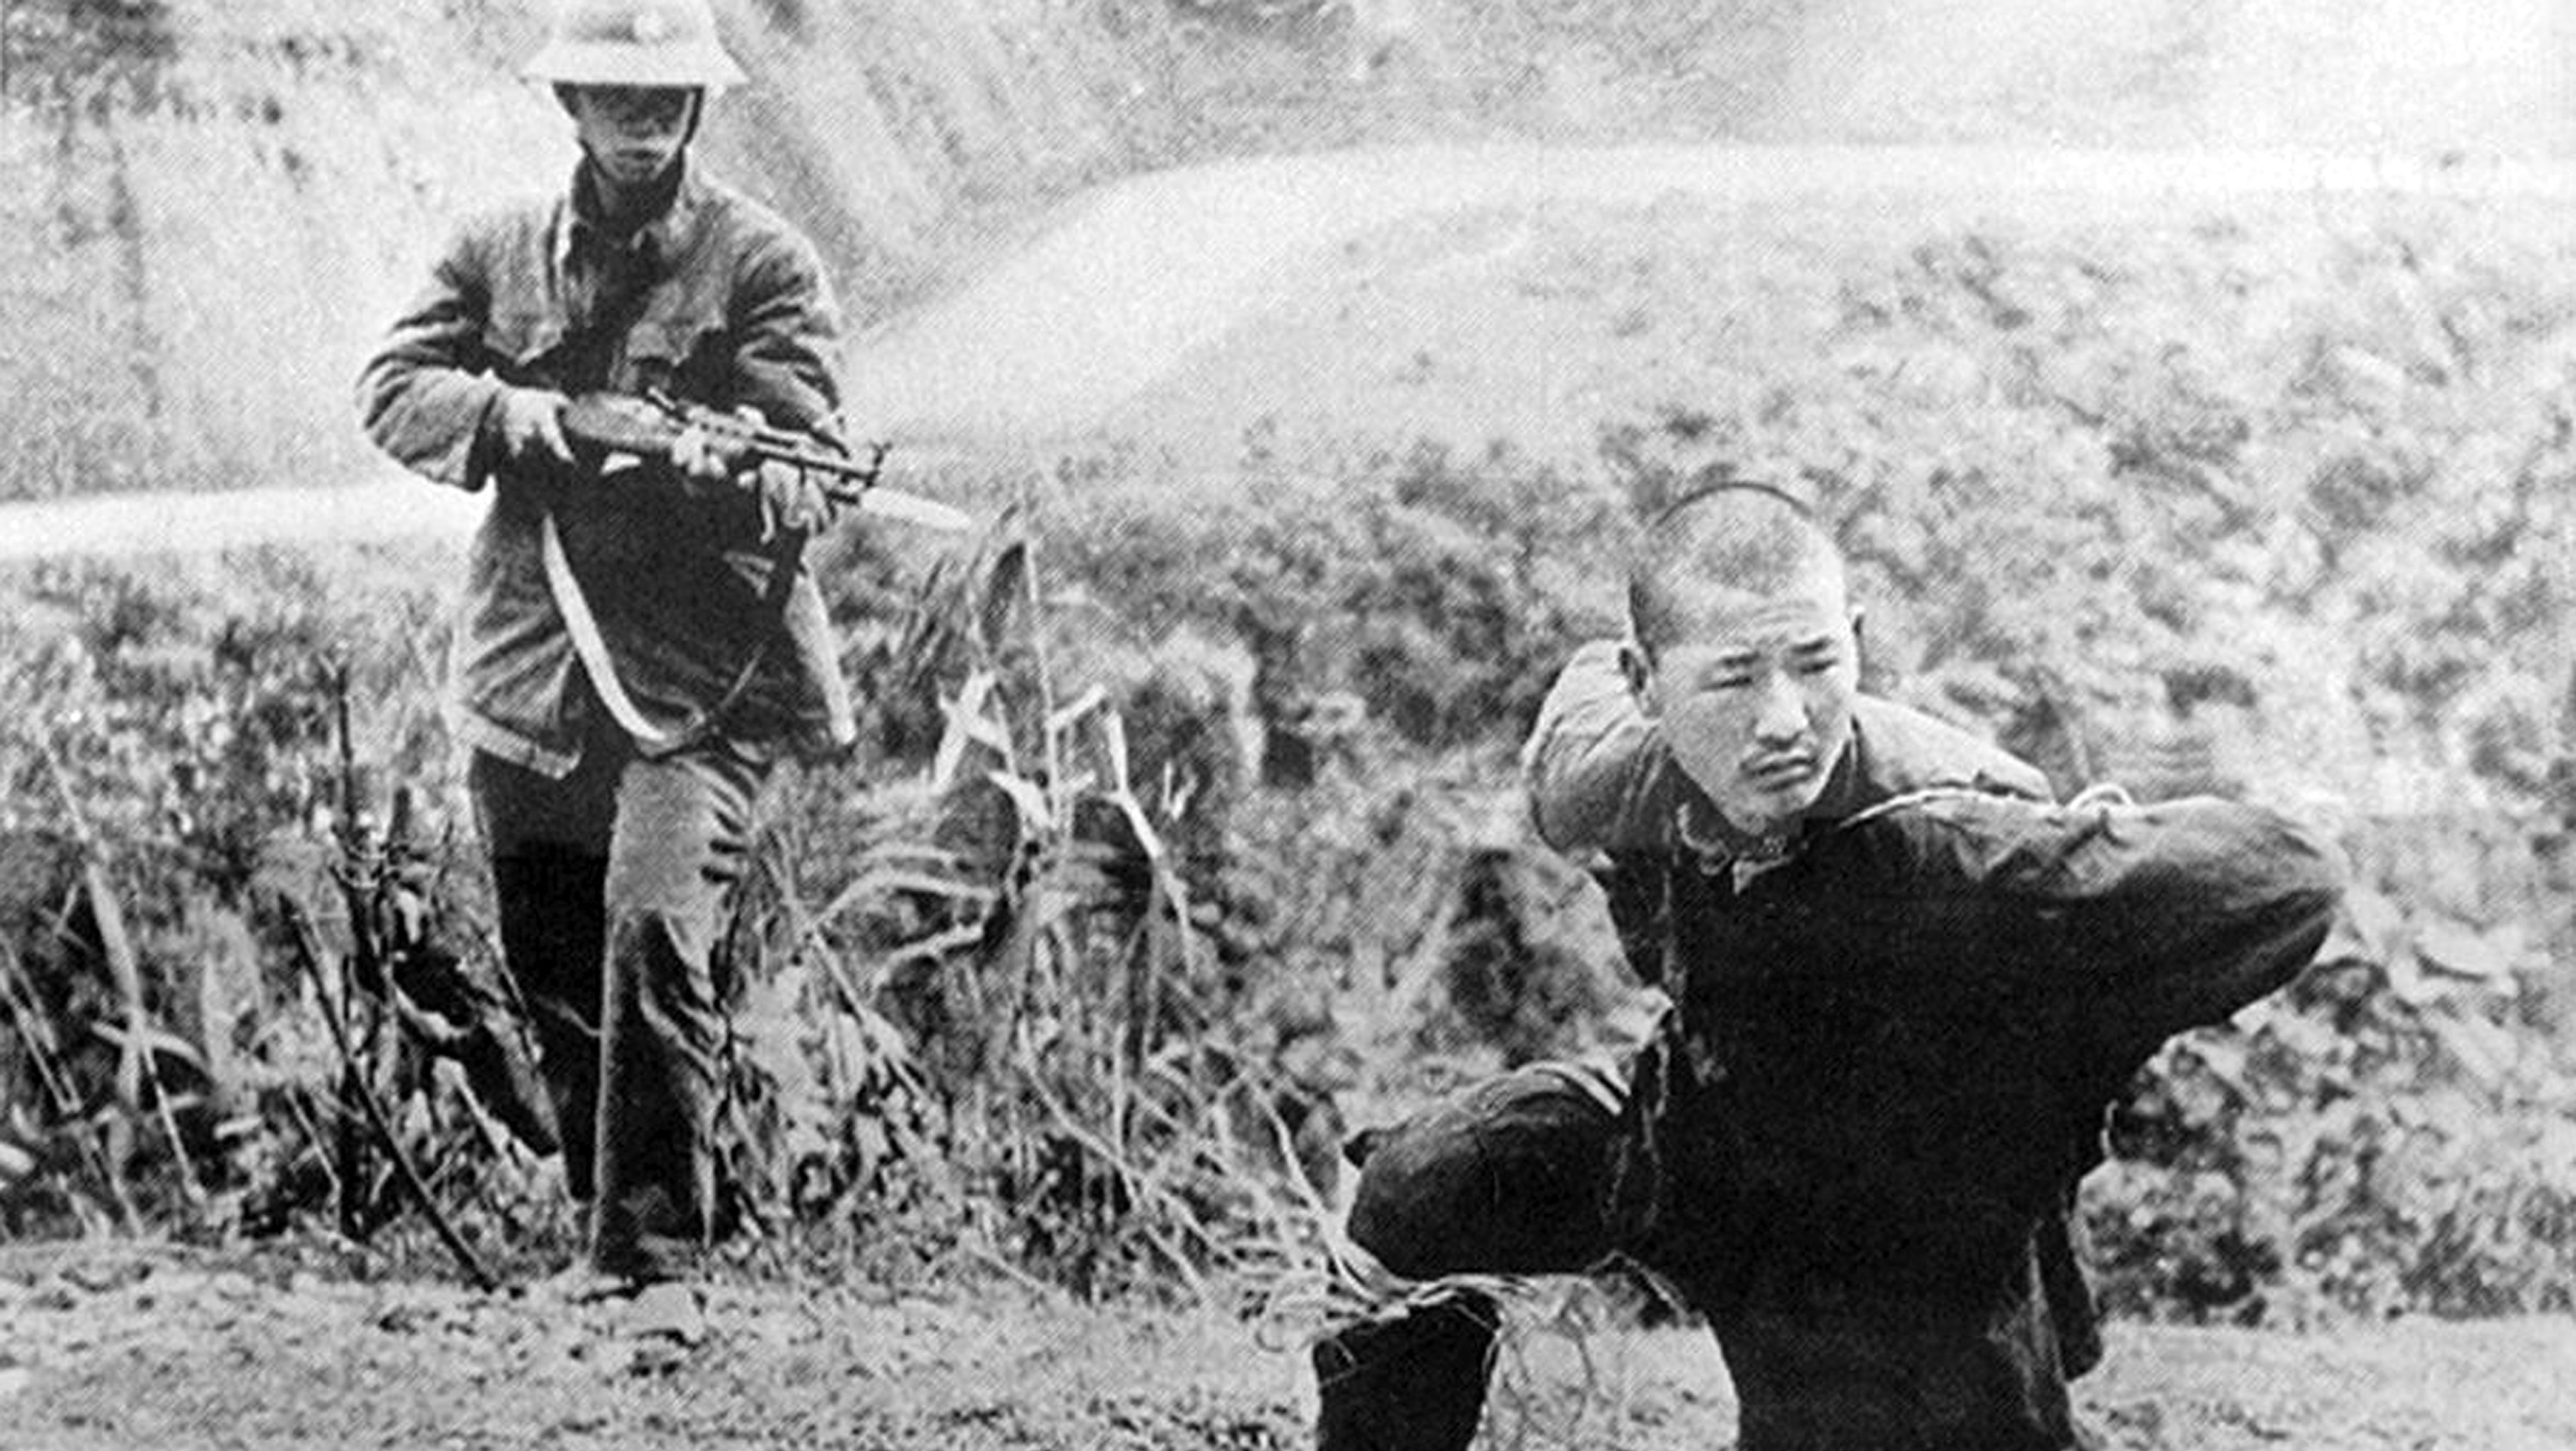 Vietnam/China: Chinese PLA soldier captured by Vietnamese militiaman, Third Indochina War, 1979